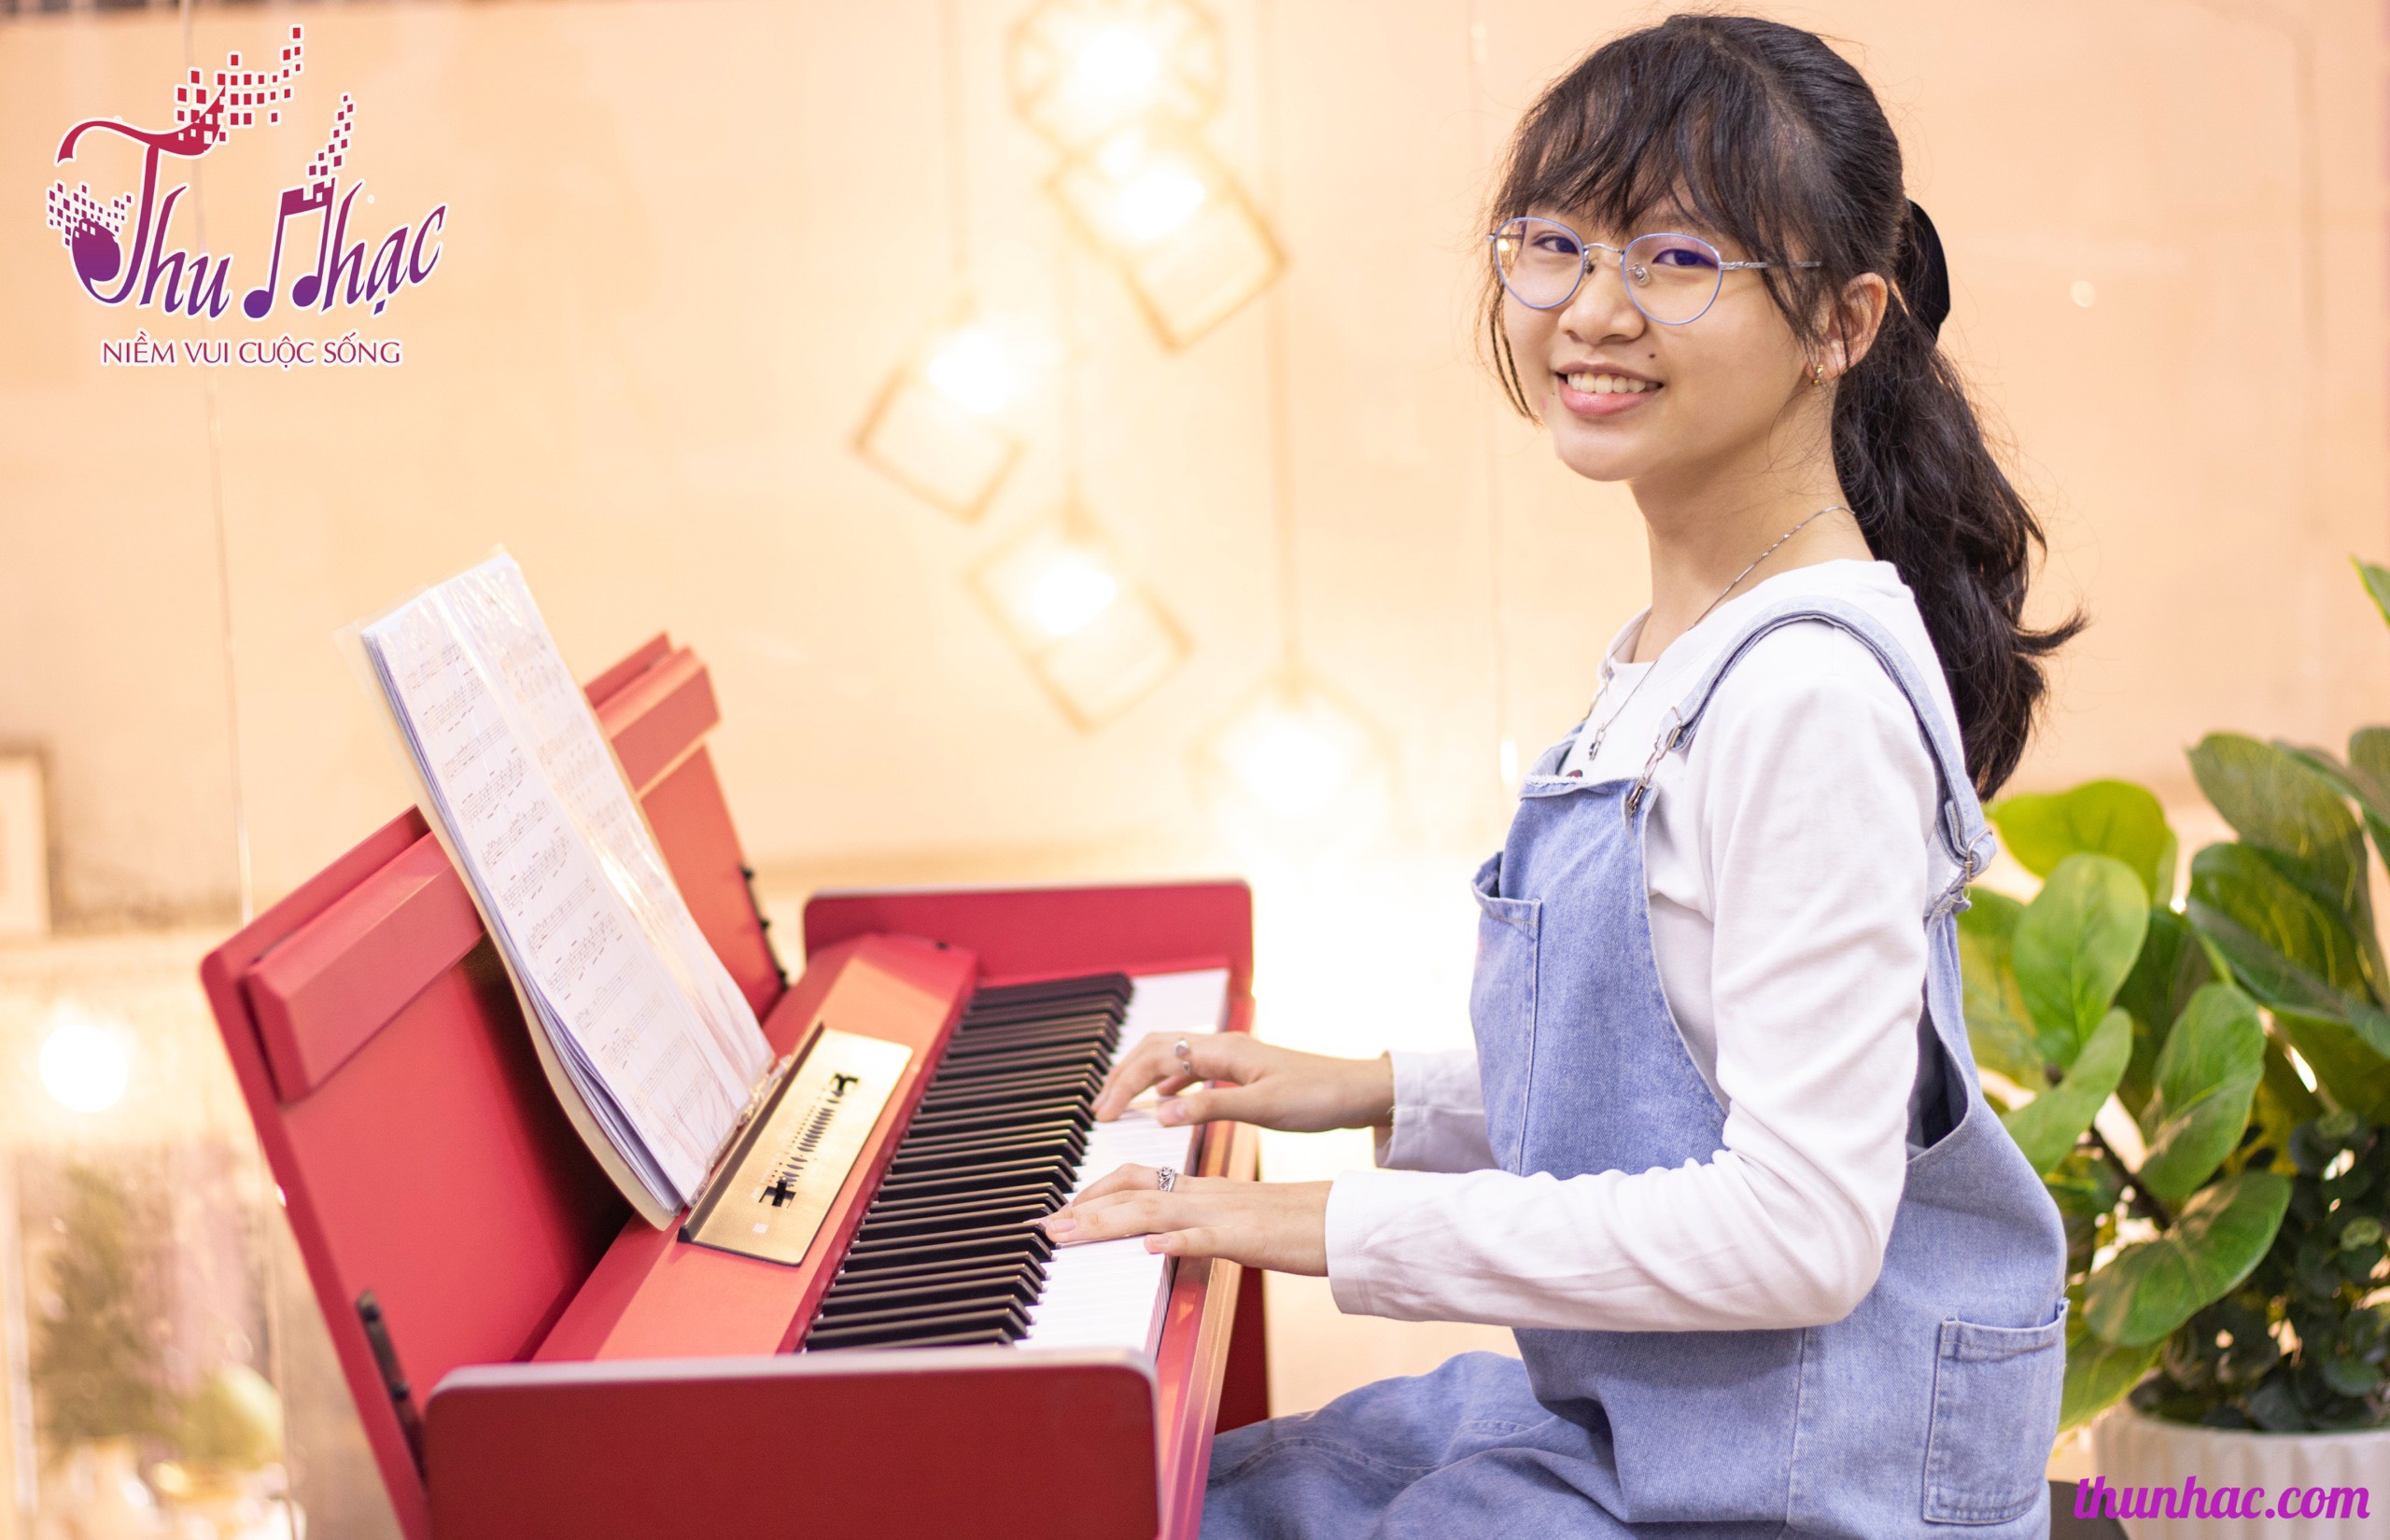 Khóa học đàn piano online cơ bản cho người mới bắt đầu